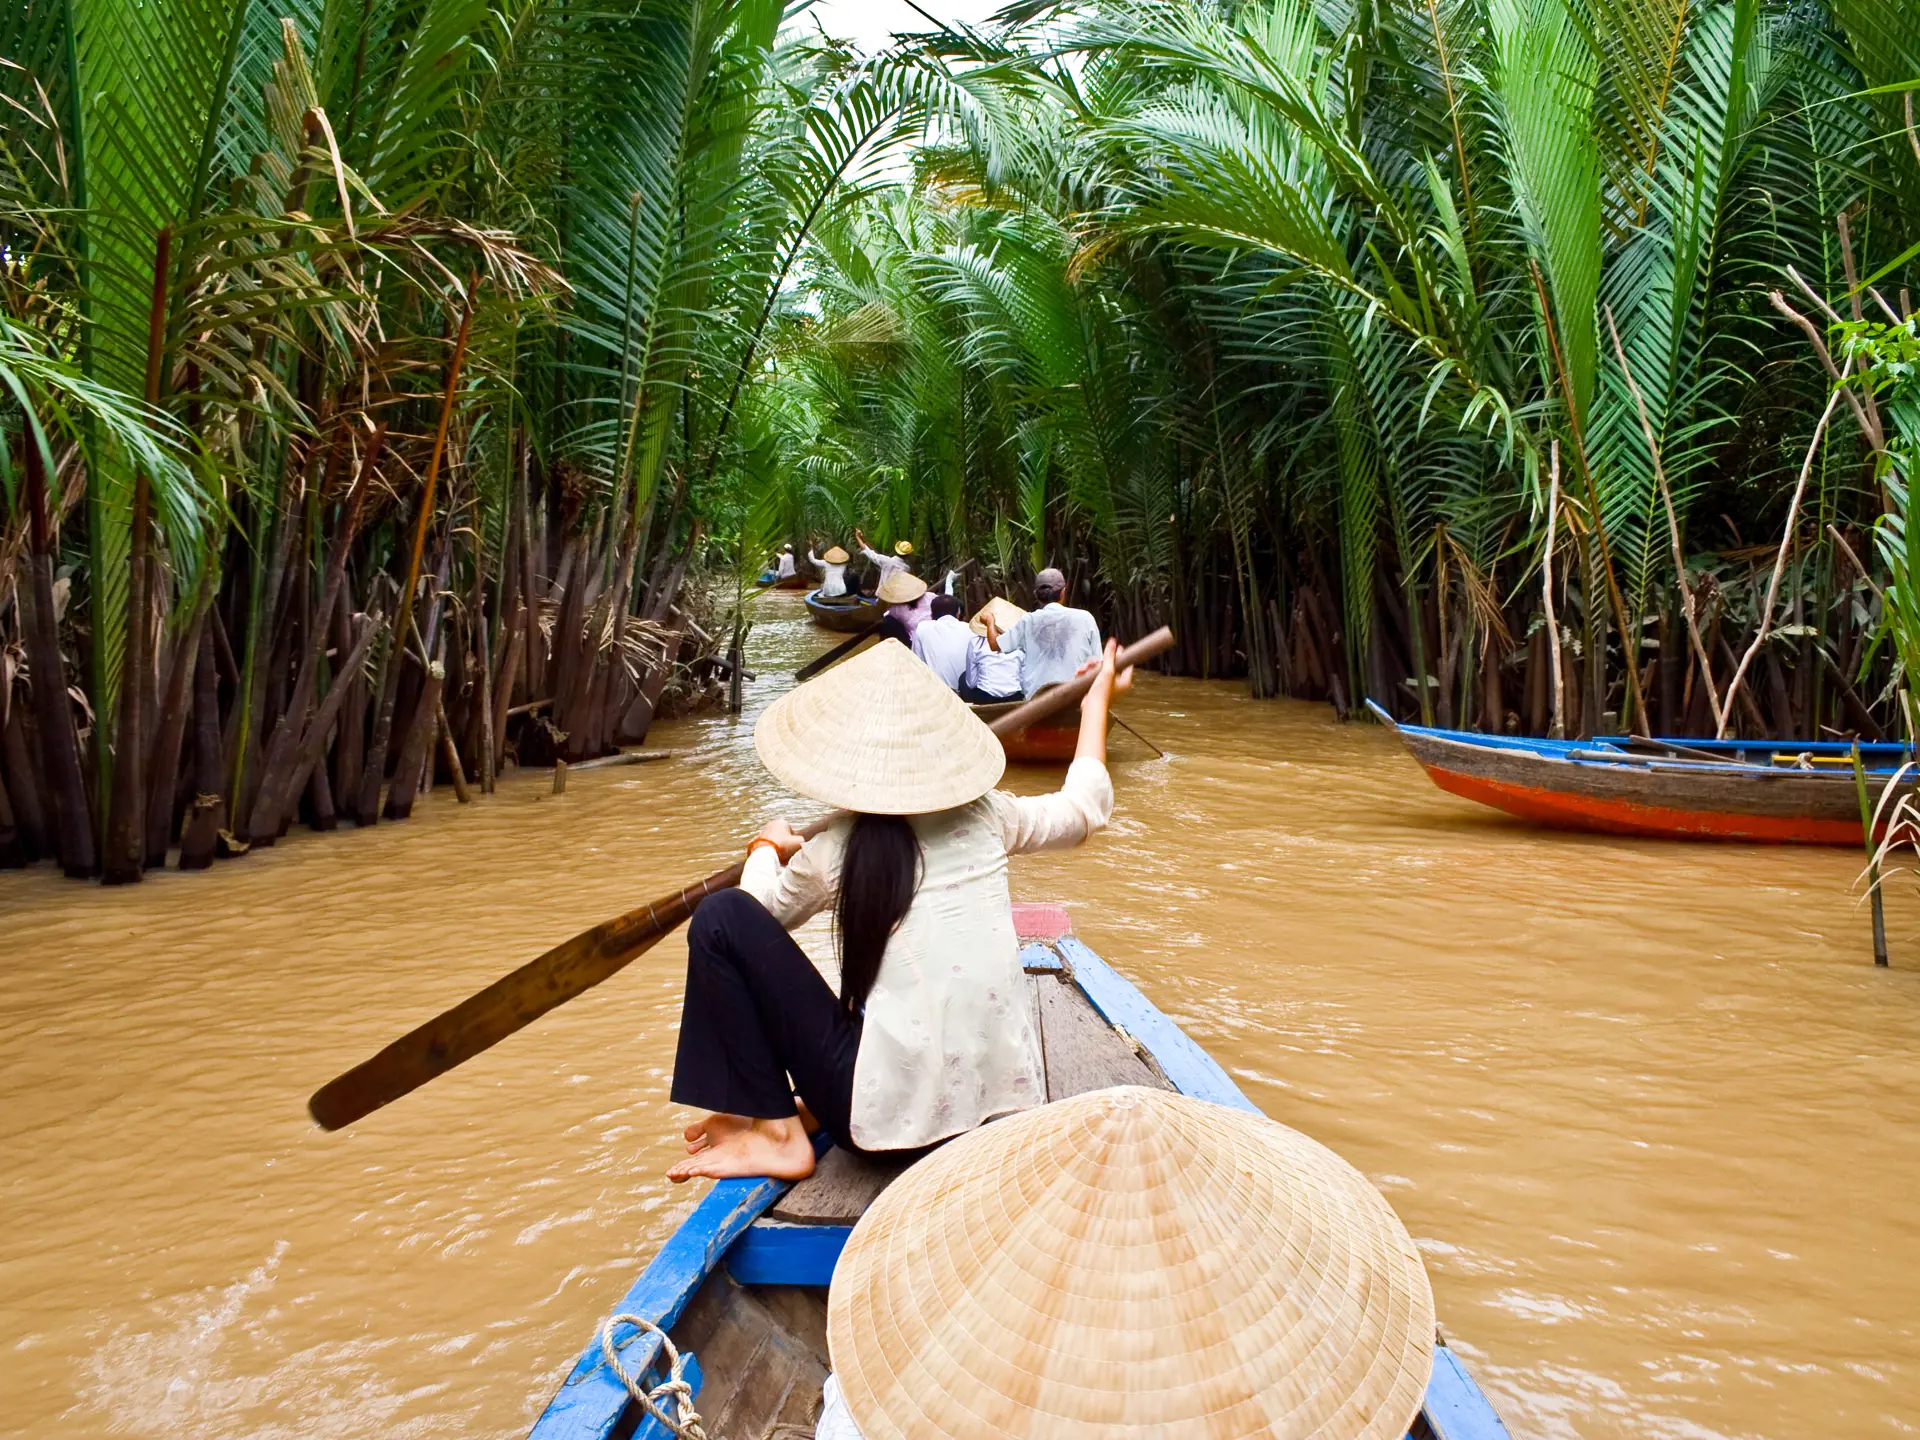 Vietnam_Vietnamese woman rowing a boat in Mekong River_36490156.jpg